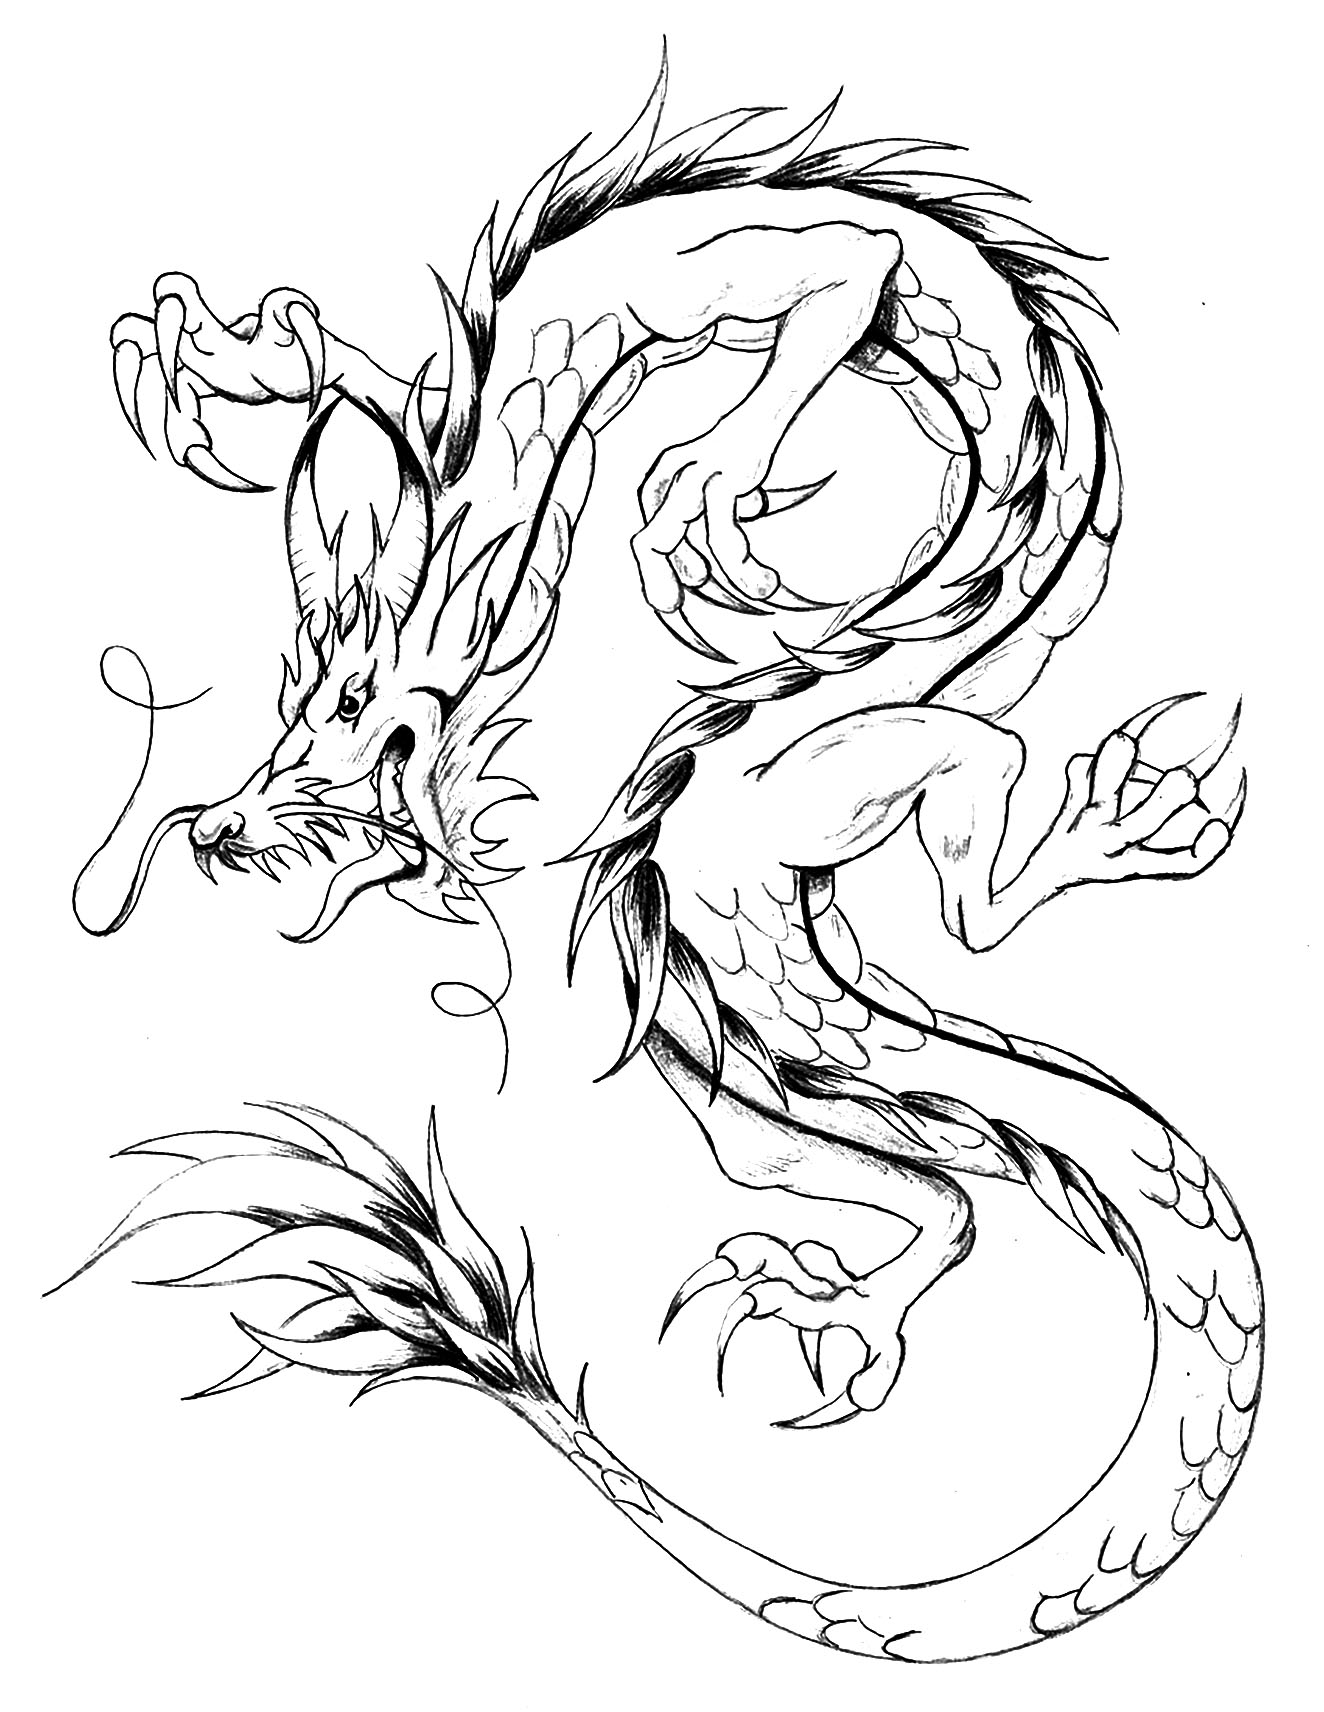 Un coloriage facile de dragon, style japonais